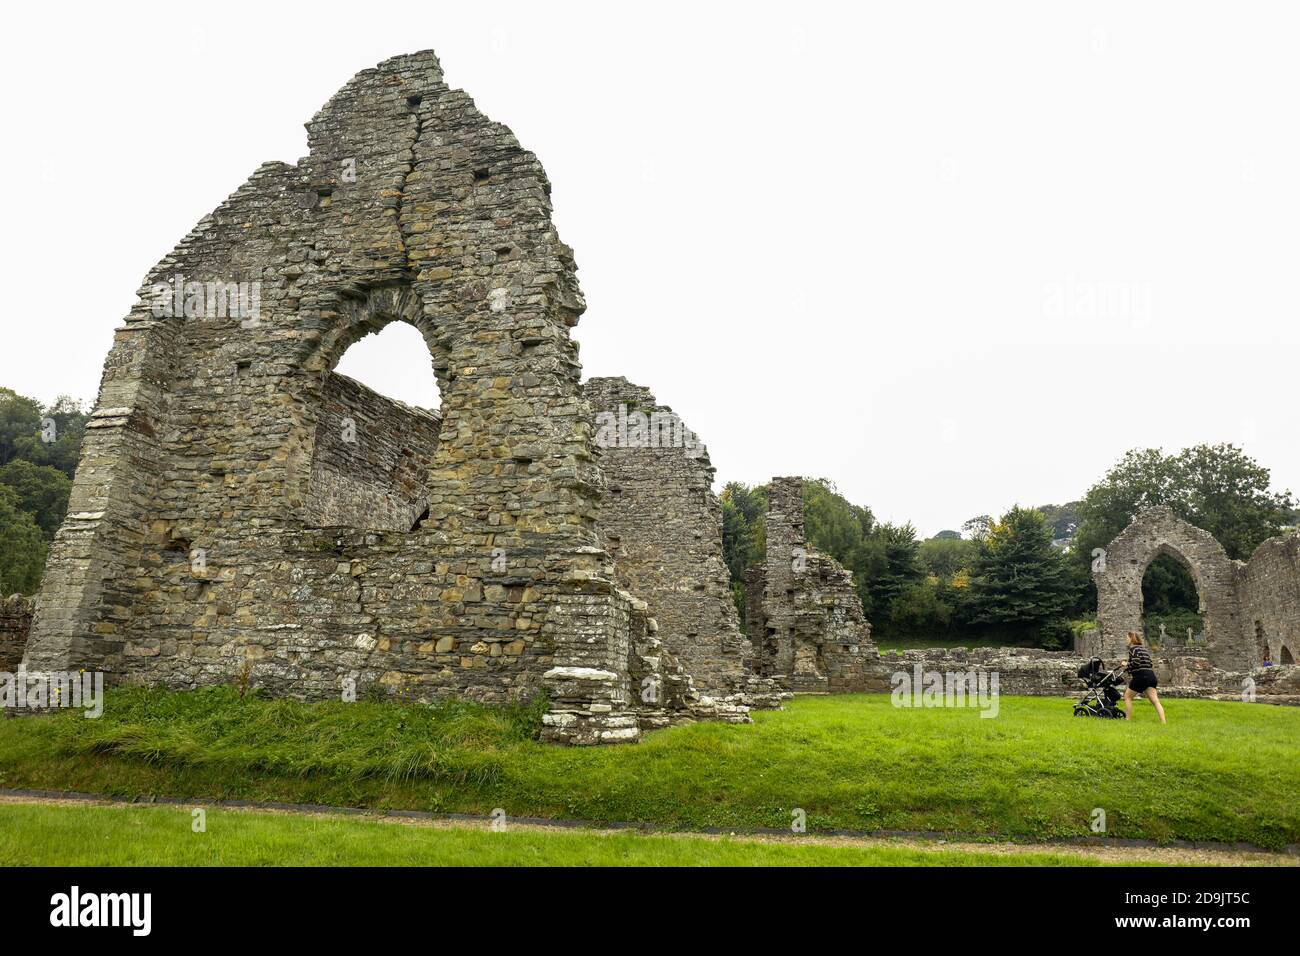 Cardigan, Pembrokeshire, pays de Galles / Royaume-Uni - 15 septembre 2020 : les ruines de l'abbaye médiévale de Saint-Dogmaels Banque D'Images